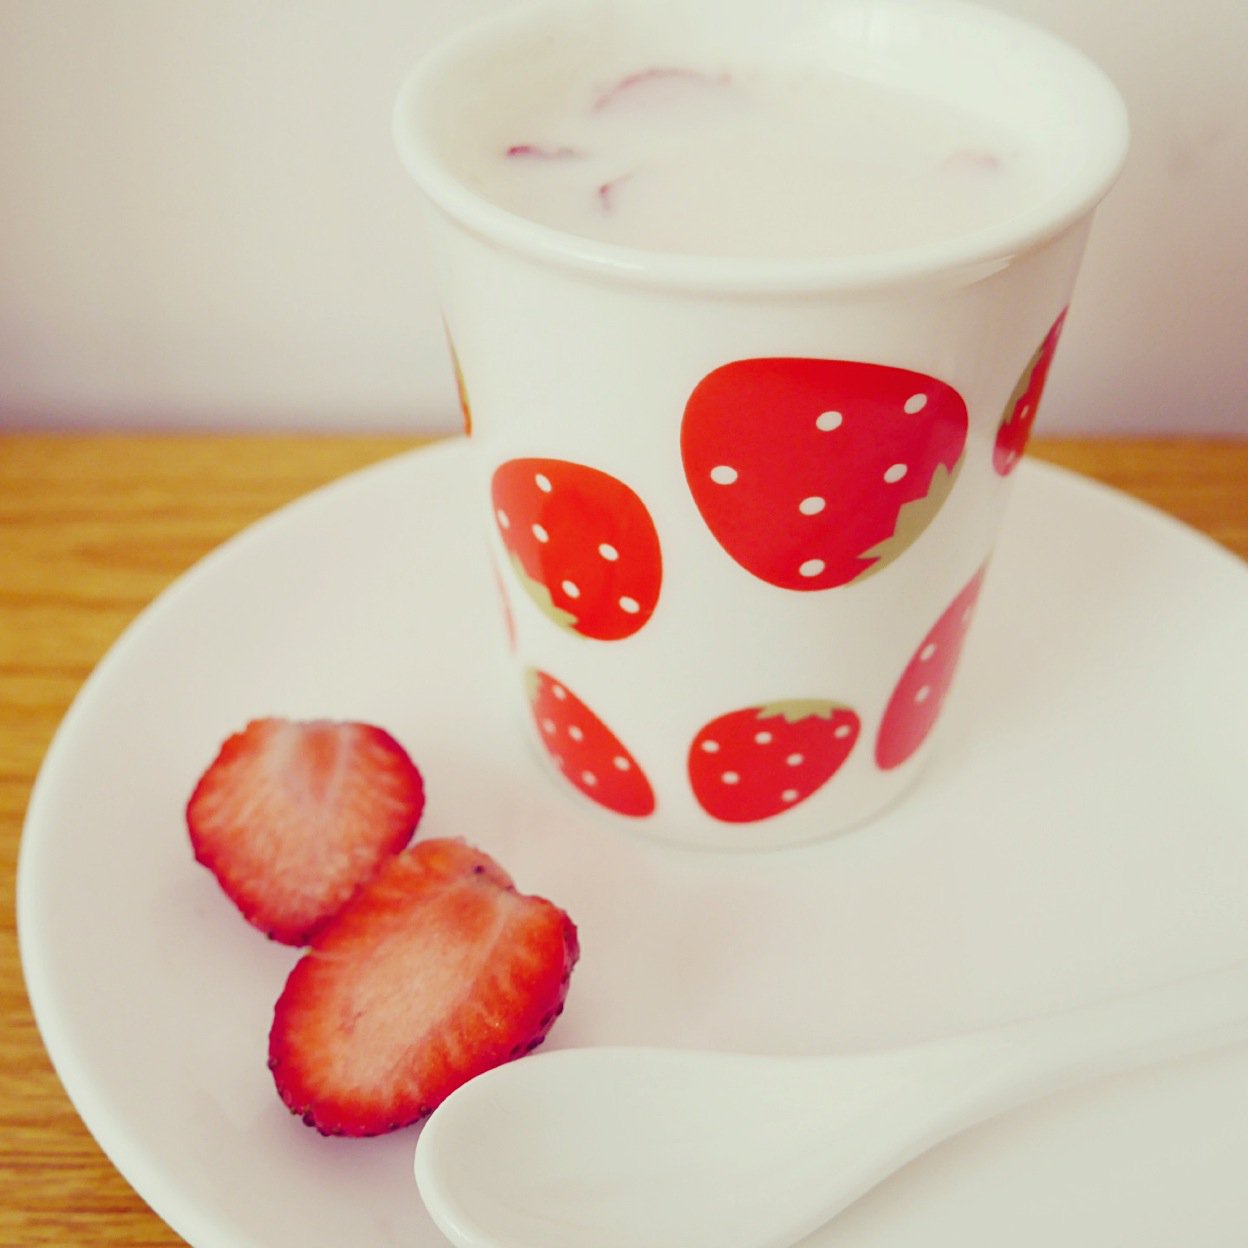 草莓酸奶